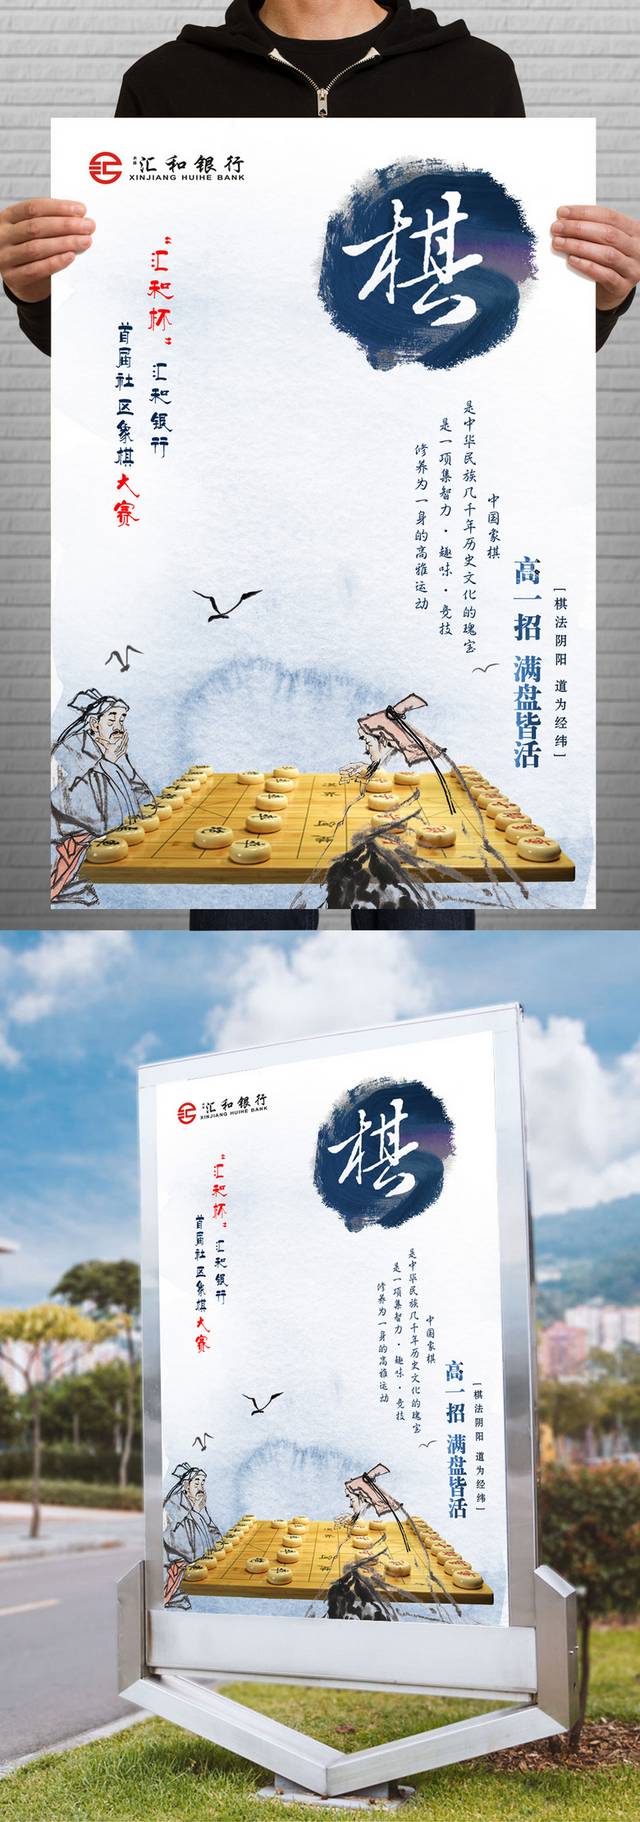 中国风棋院宣传海报